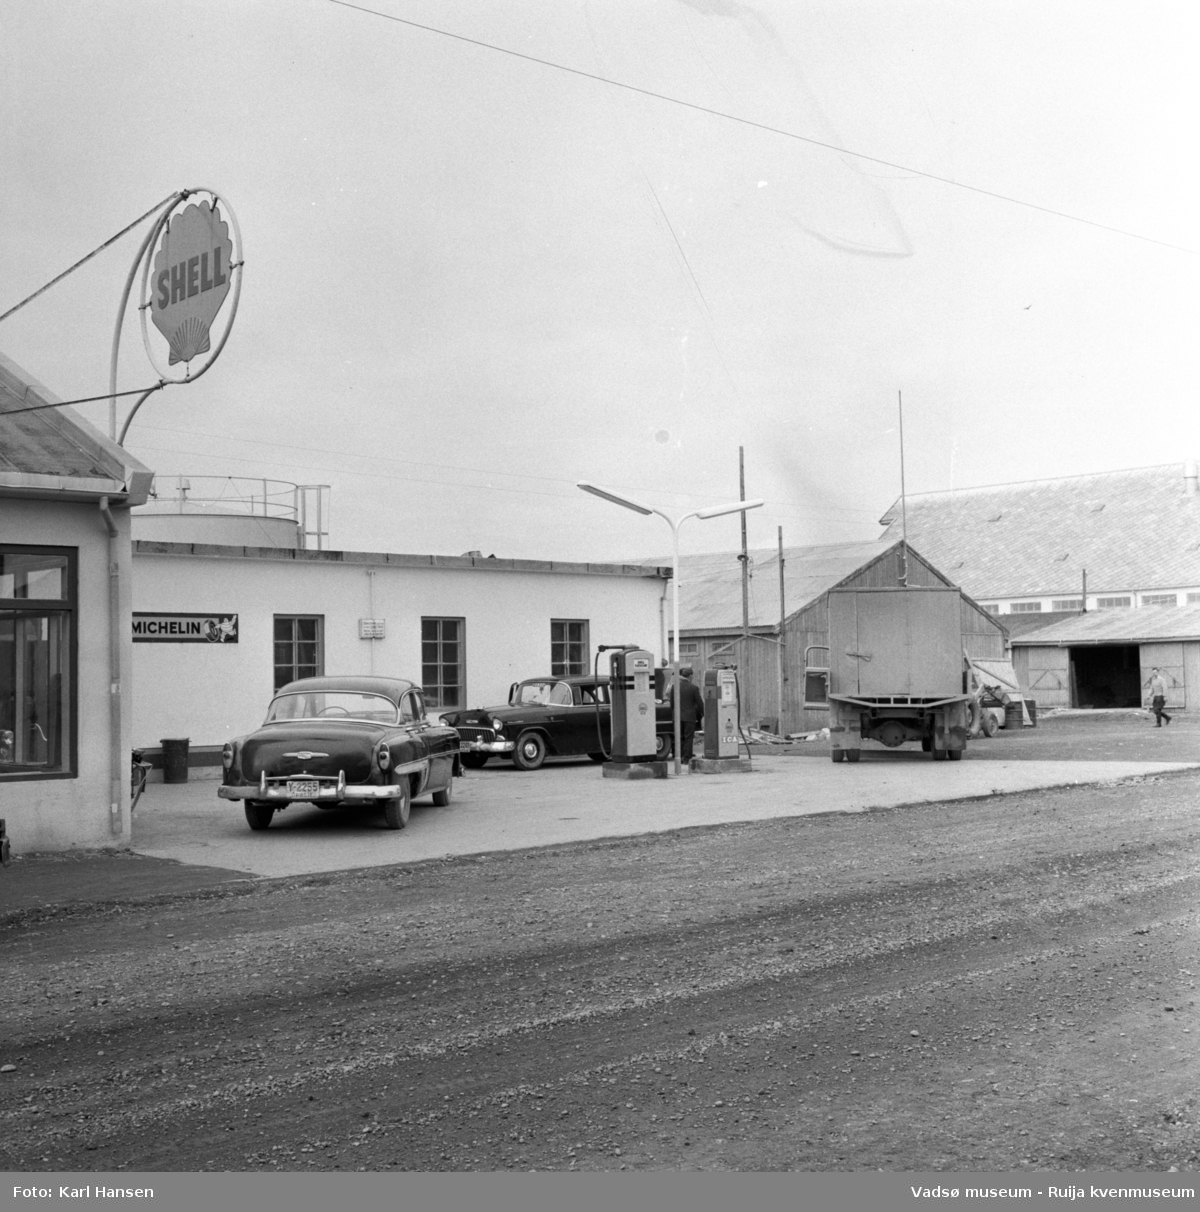 Vadsø sentrum 1959. Shell bensinstasjon og tankanlegg i Tollbugata. Reklameskilt, drivstoffpumper, to drosjer og en lastebil i forkant av bygningen. Til høyre i bildet ser vi skifertaket til Vadsø hermetikkfabrikk.